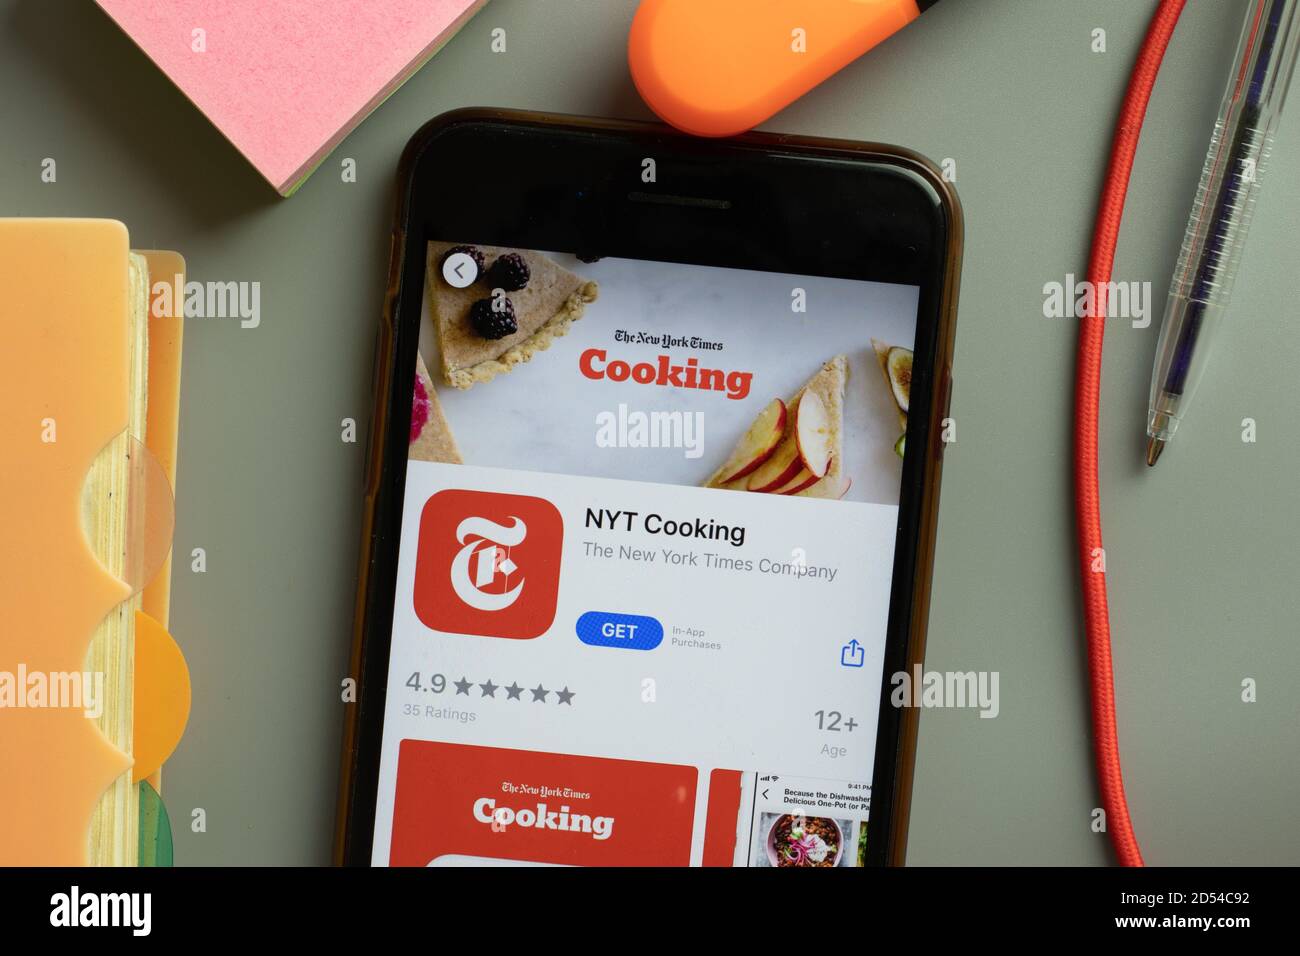 Nueva York, EE.UU. - 29 de septiembre de 2020: NYT Cooking mobile app logo en la pantalla del teléfono de cerca, editorial ilustrativa Foto de stock